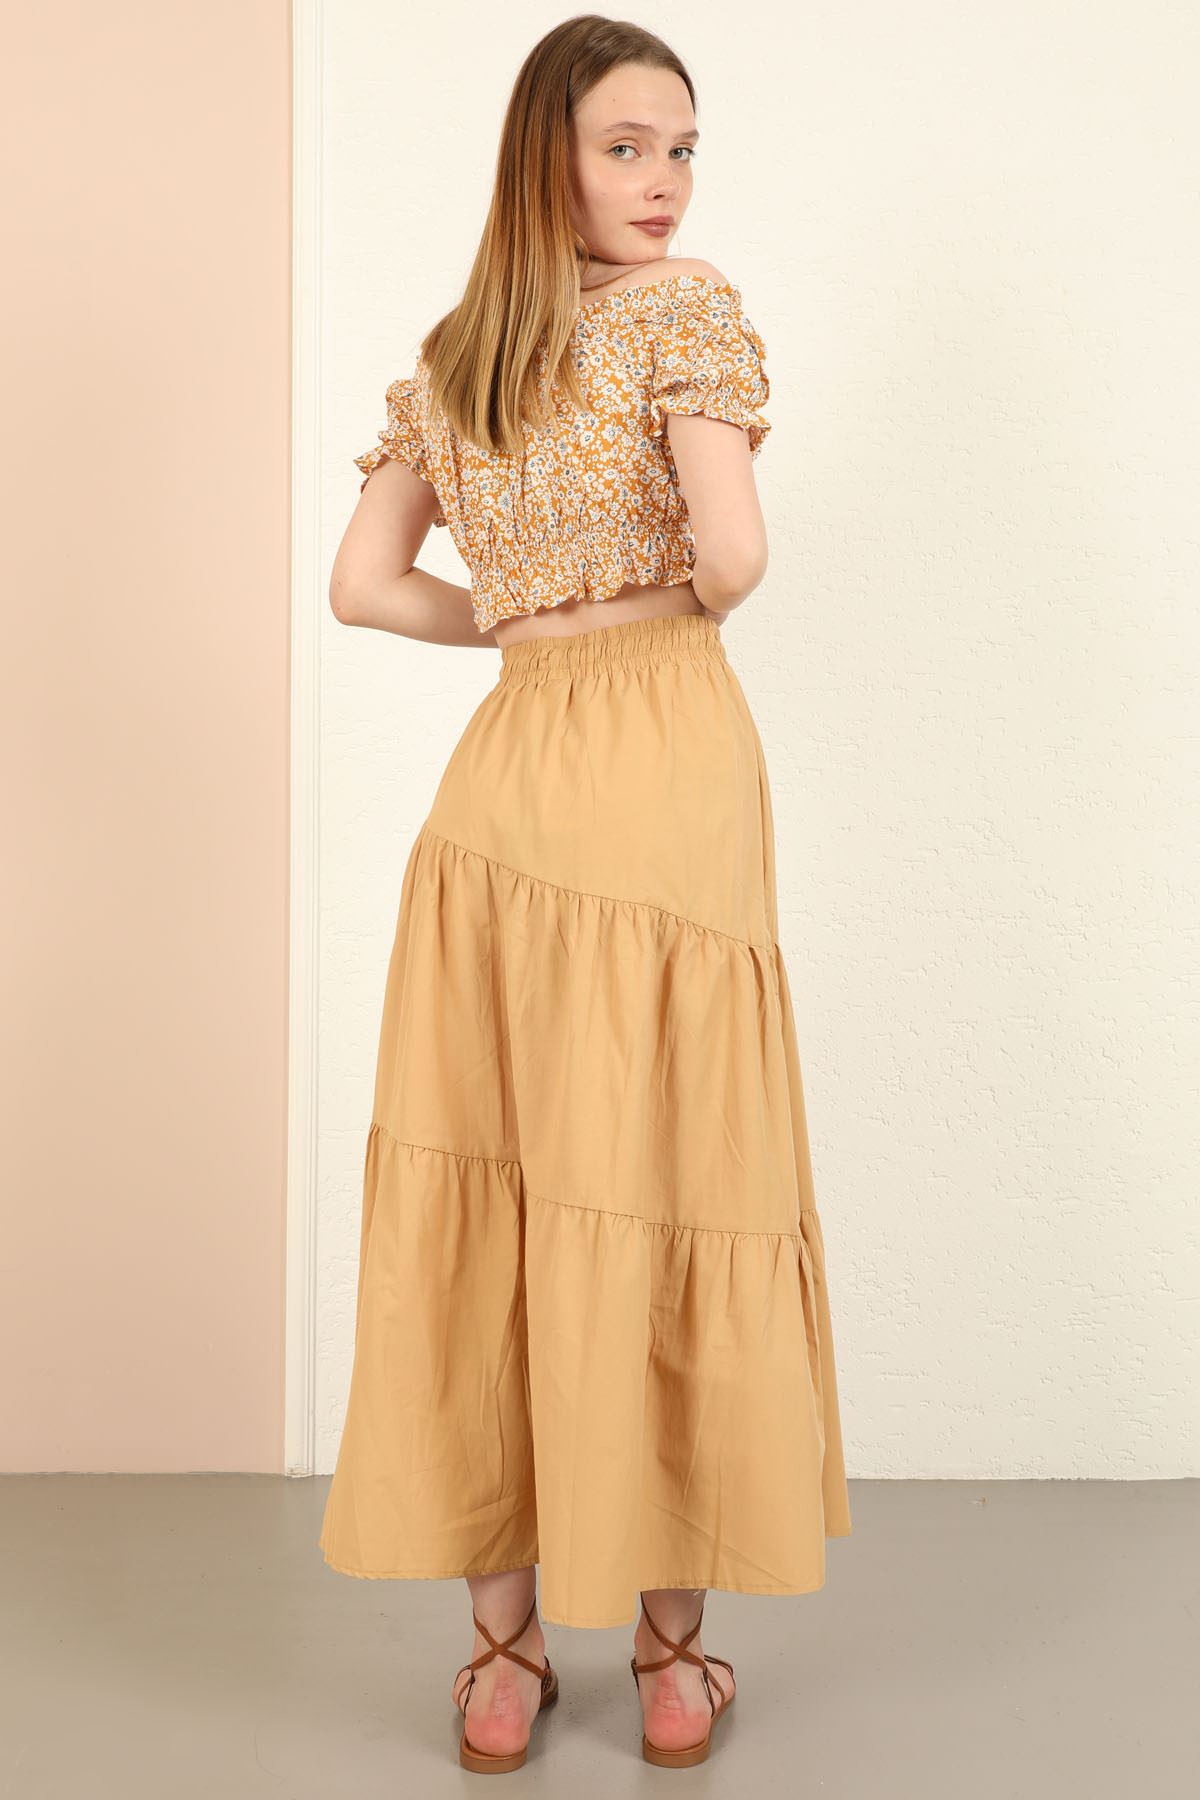 Soft Woven Fabric Long Wide Fit Elastik Waist Women'S Skirt - Beige 